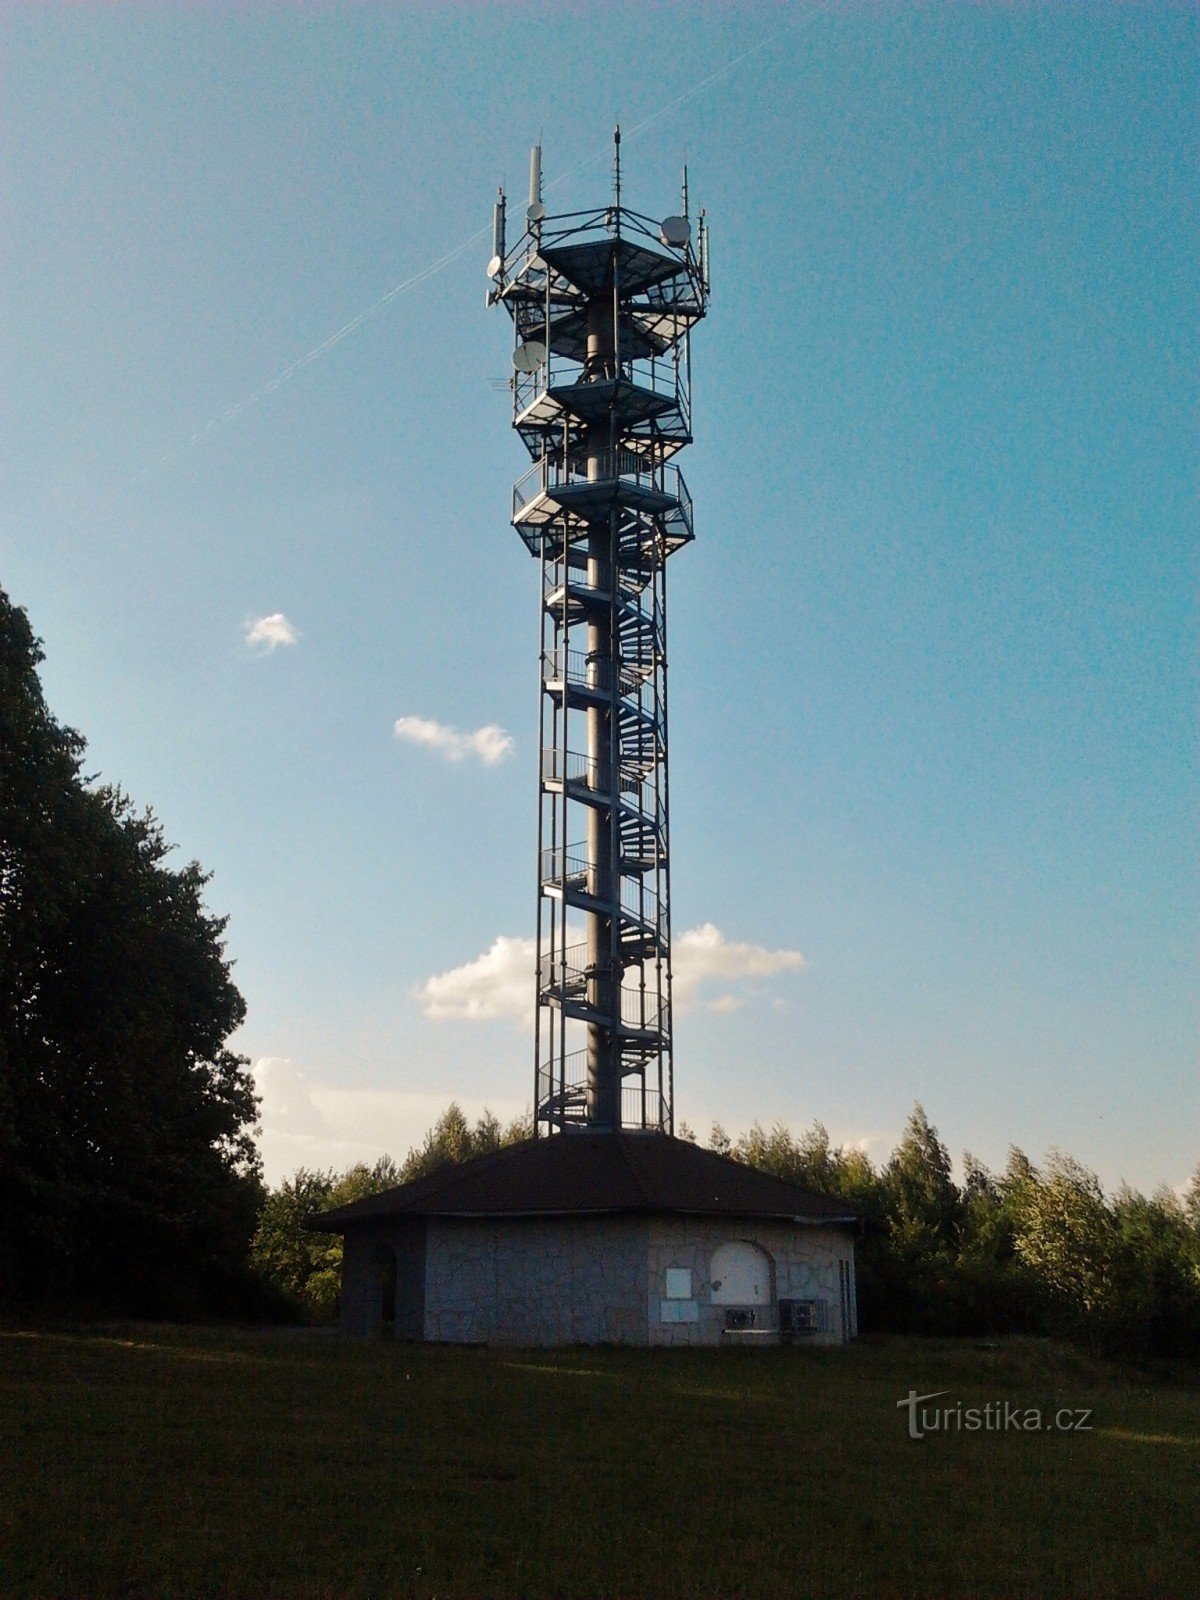 Torre mirador de Vysoka